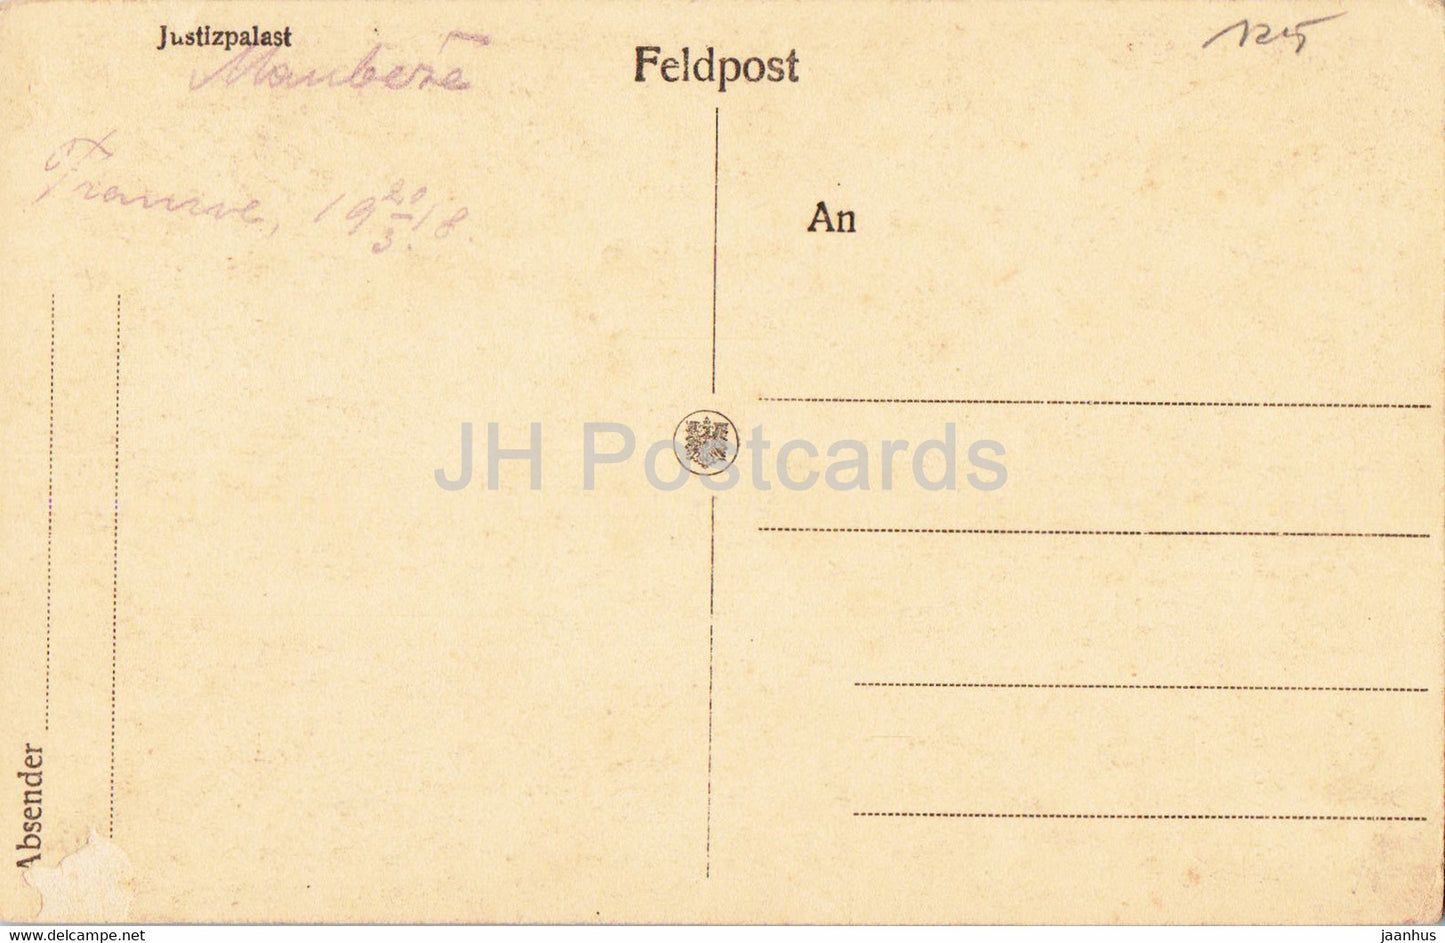 Laon - Justizpalast - Feldpostkarte - military mail - old postcard - France - unused